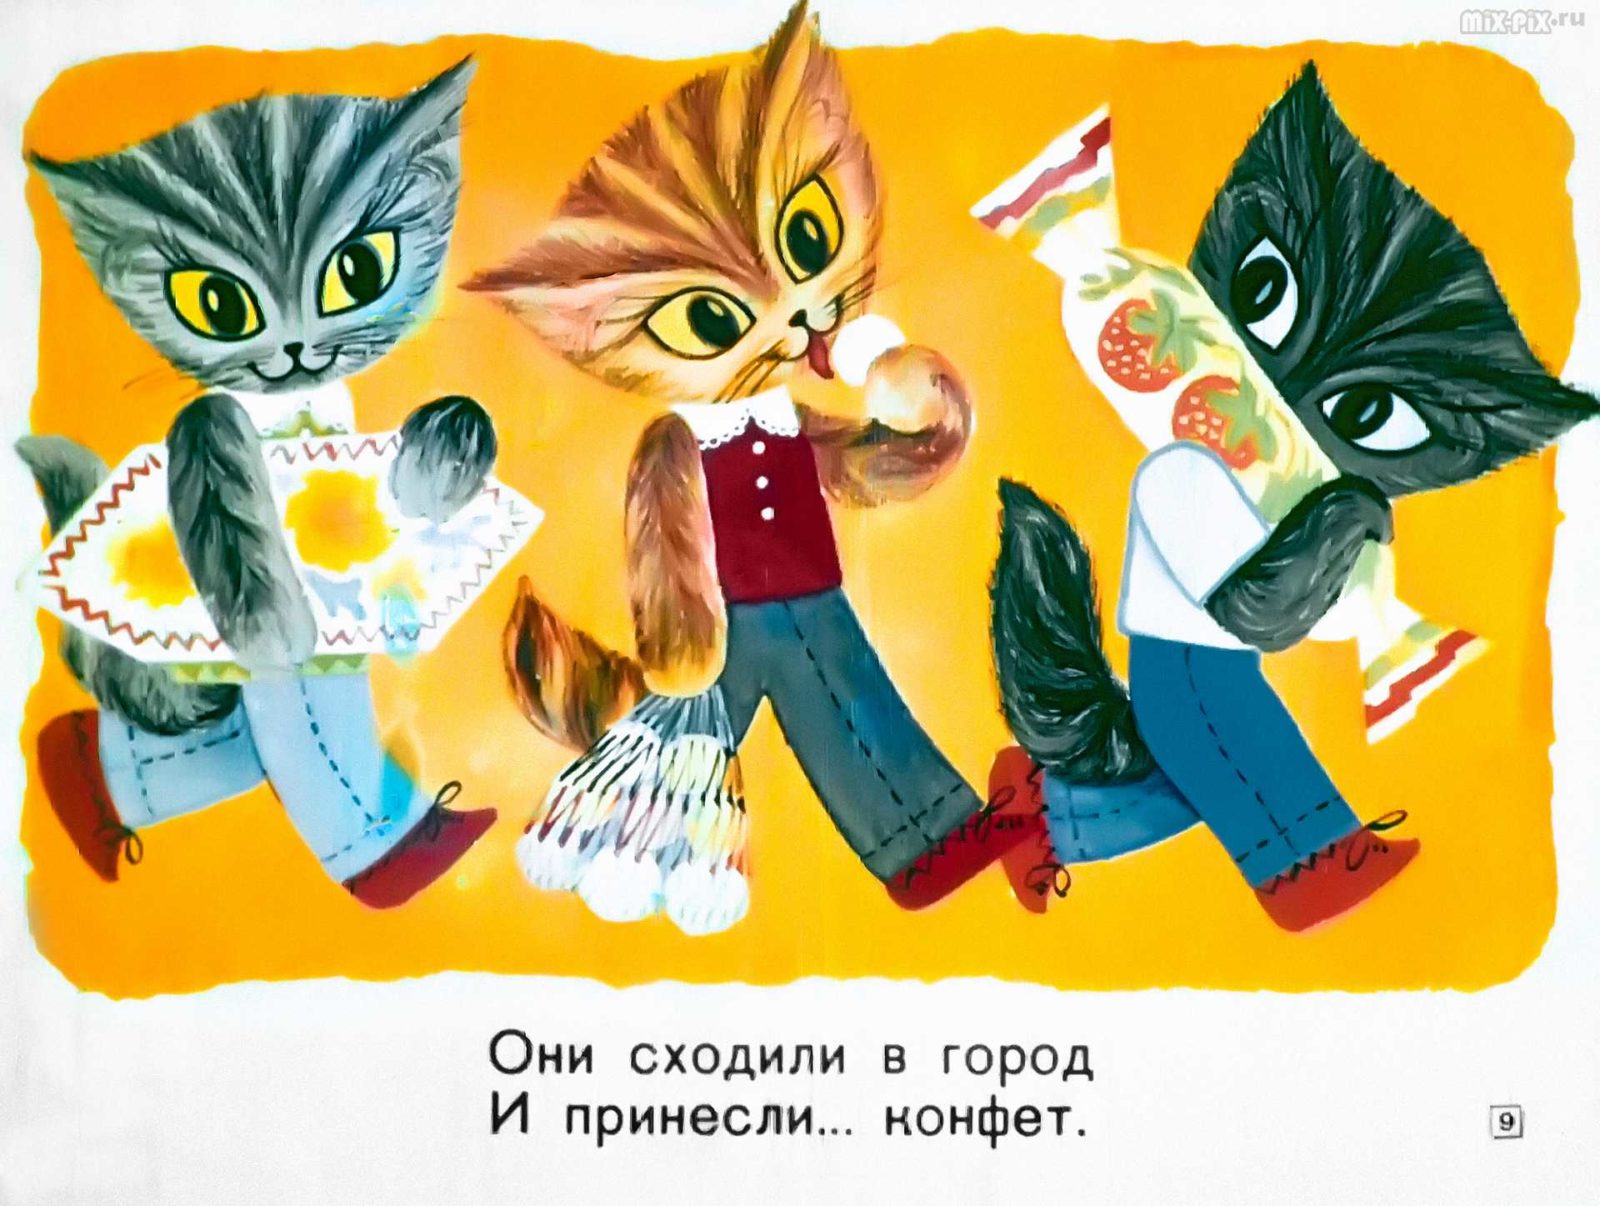 Касьянка, Том и Плут (1968) 24